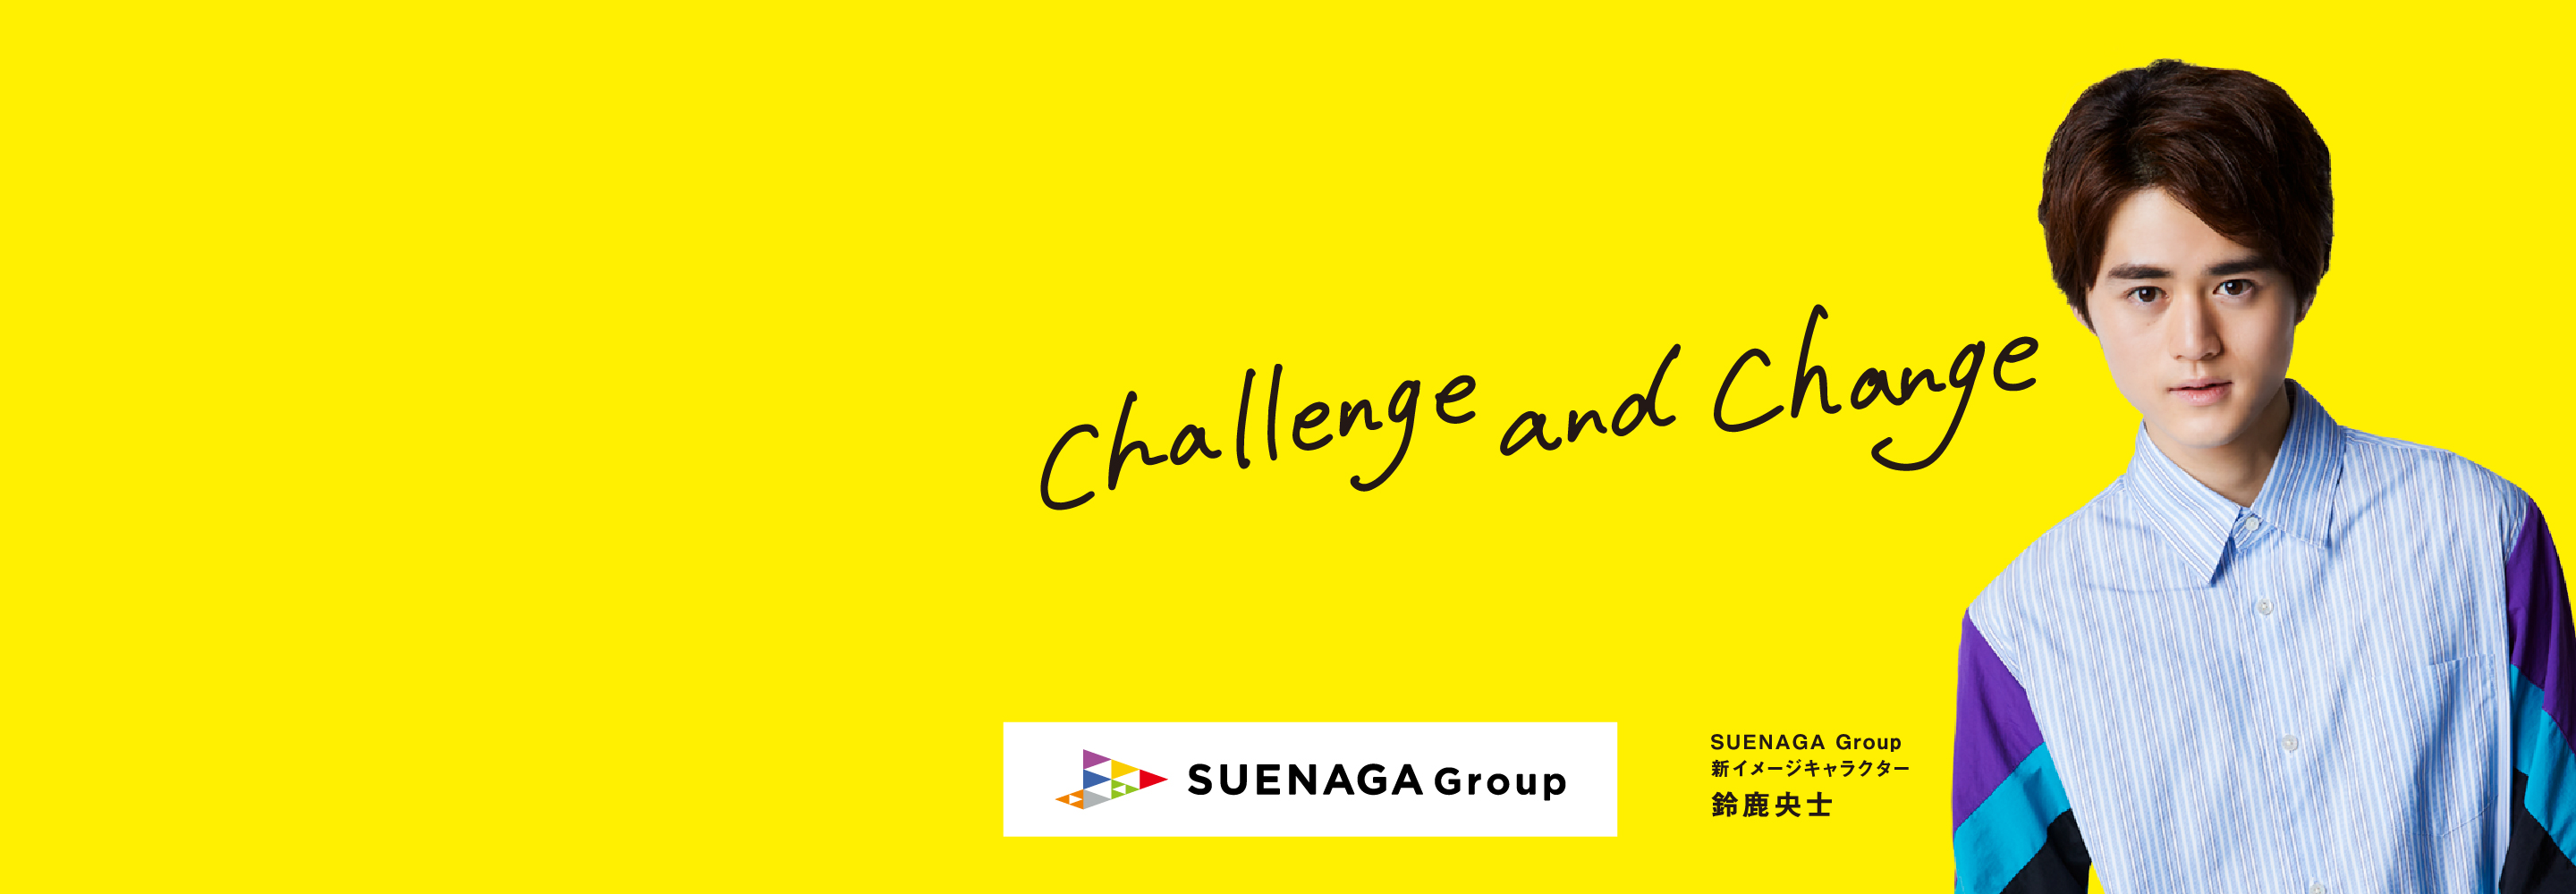 Challenge and Change. SUENAGA GROUP.